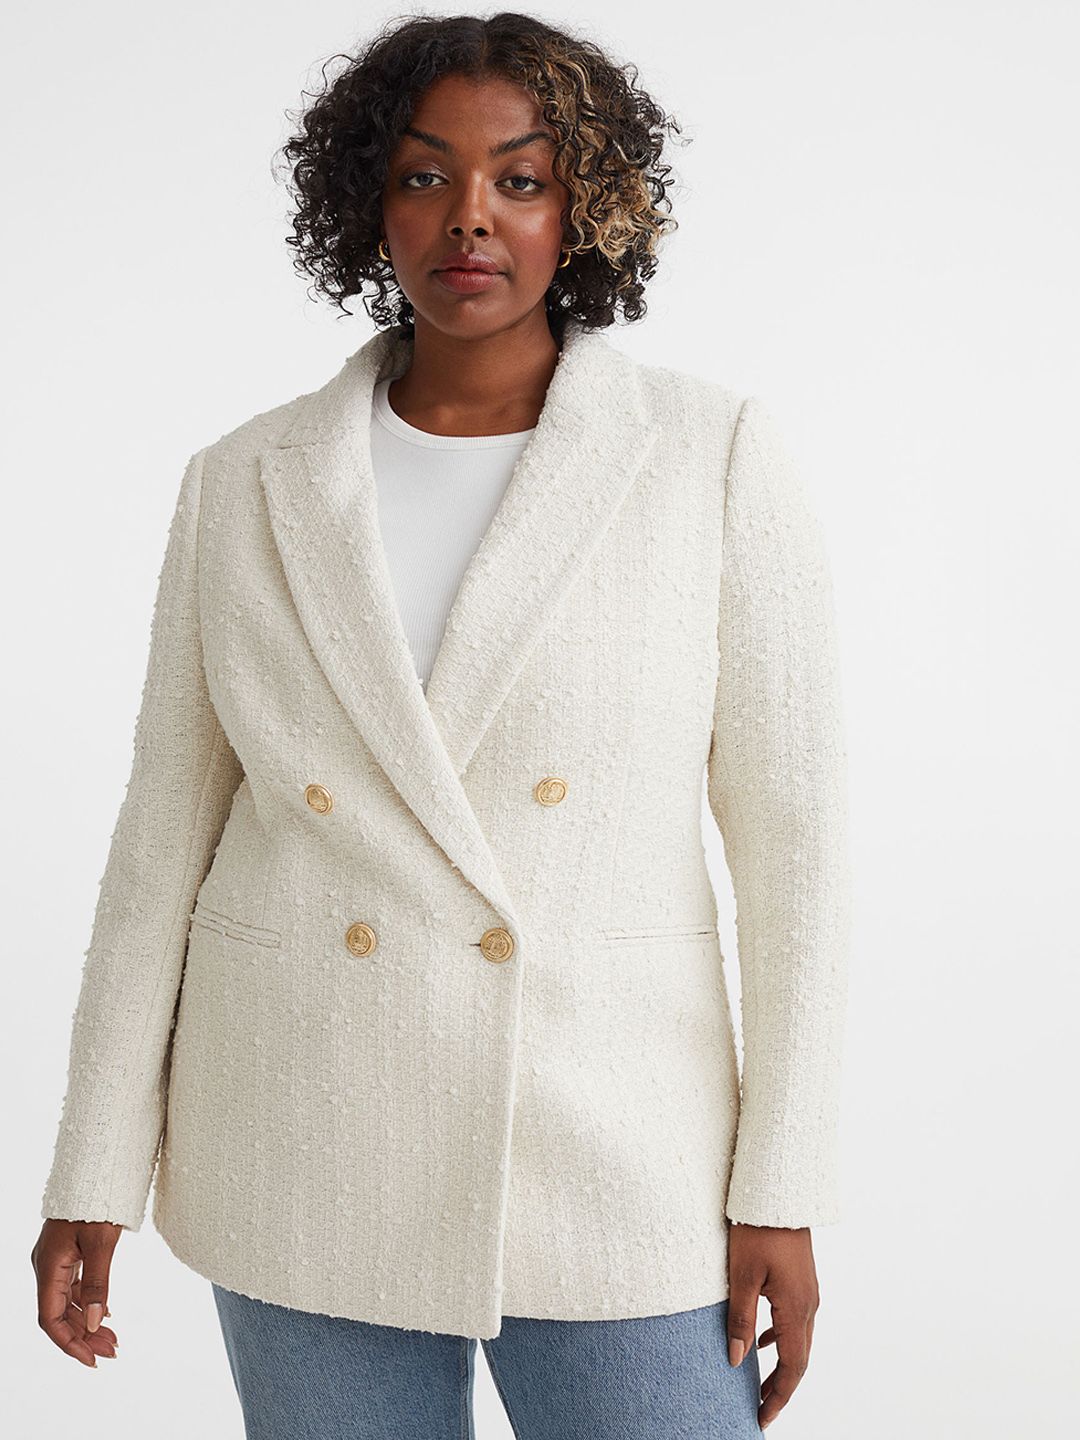 H&M Women White Textured-Weave Blazer Price in India